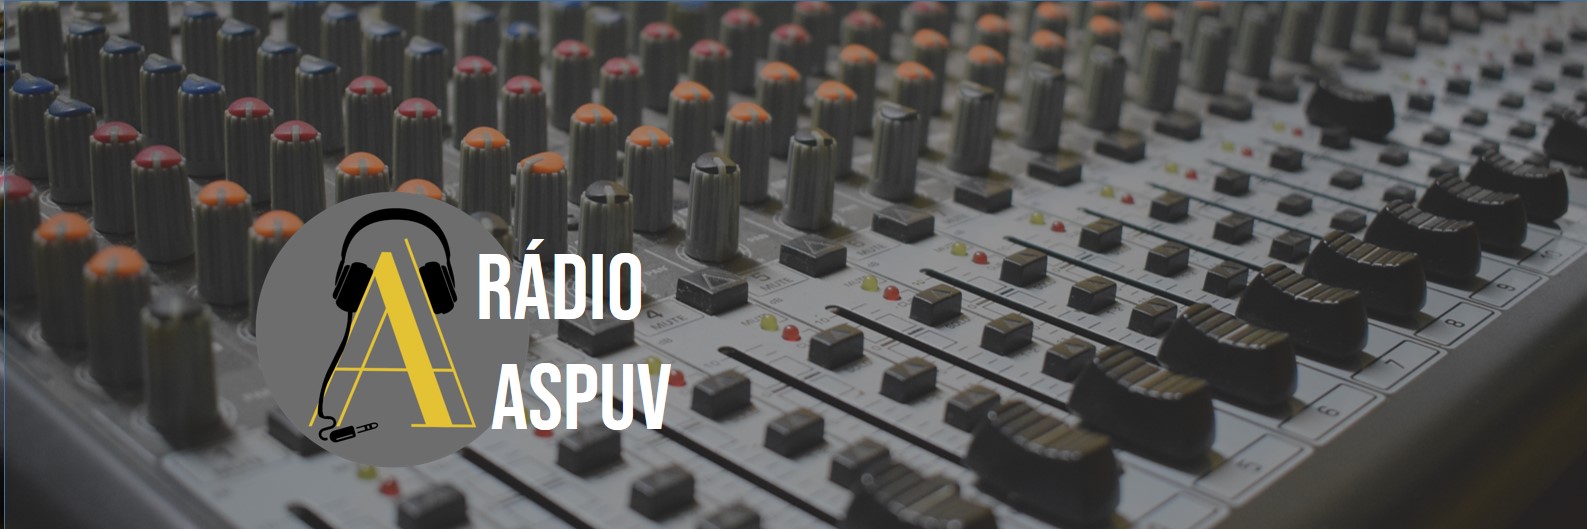 Rádio ASPUV está disponível em aplicativos de podcast